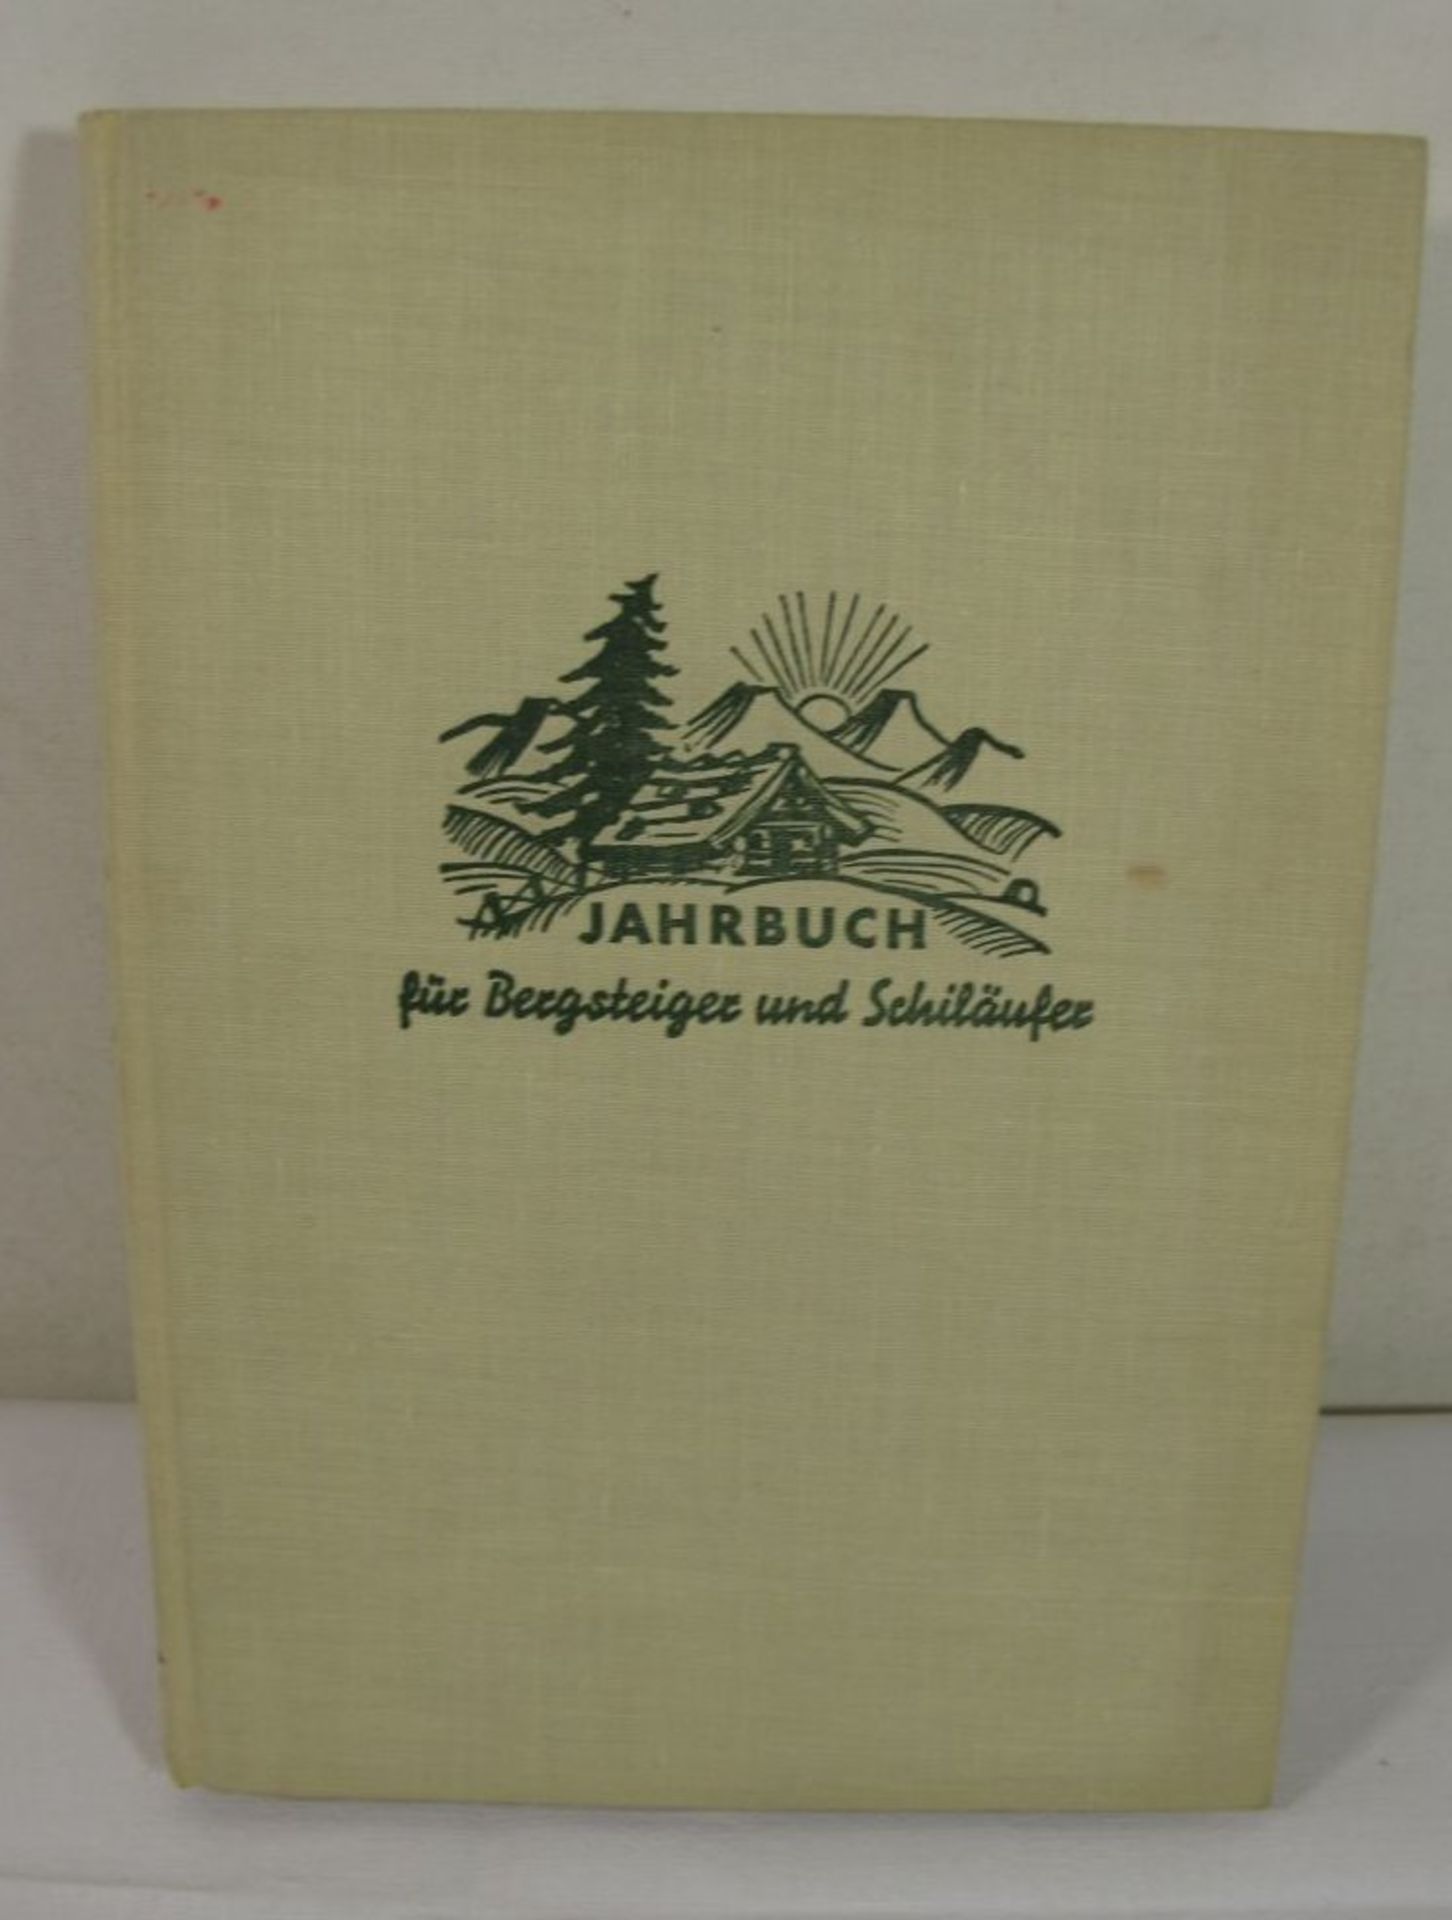 Jahrbuch für Bergsteiger und Schiläufer 1937, Hrsg. Hanns Barth